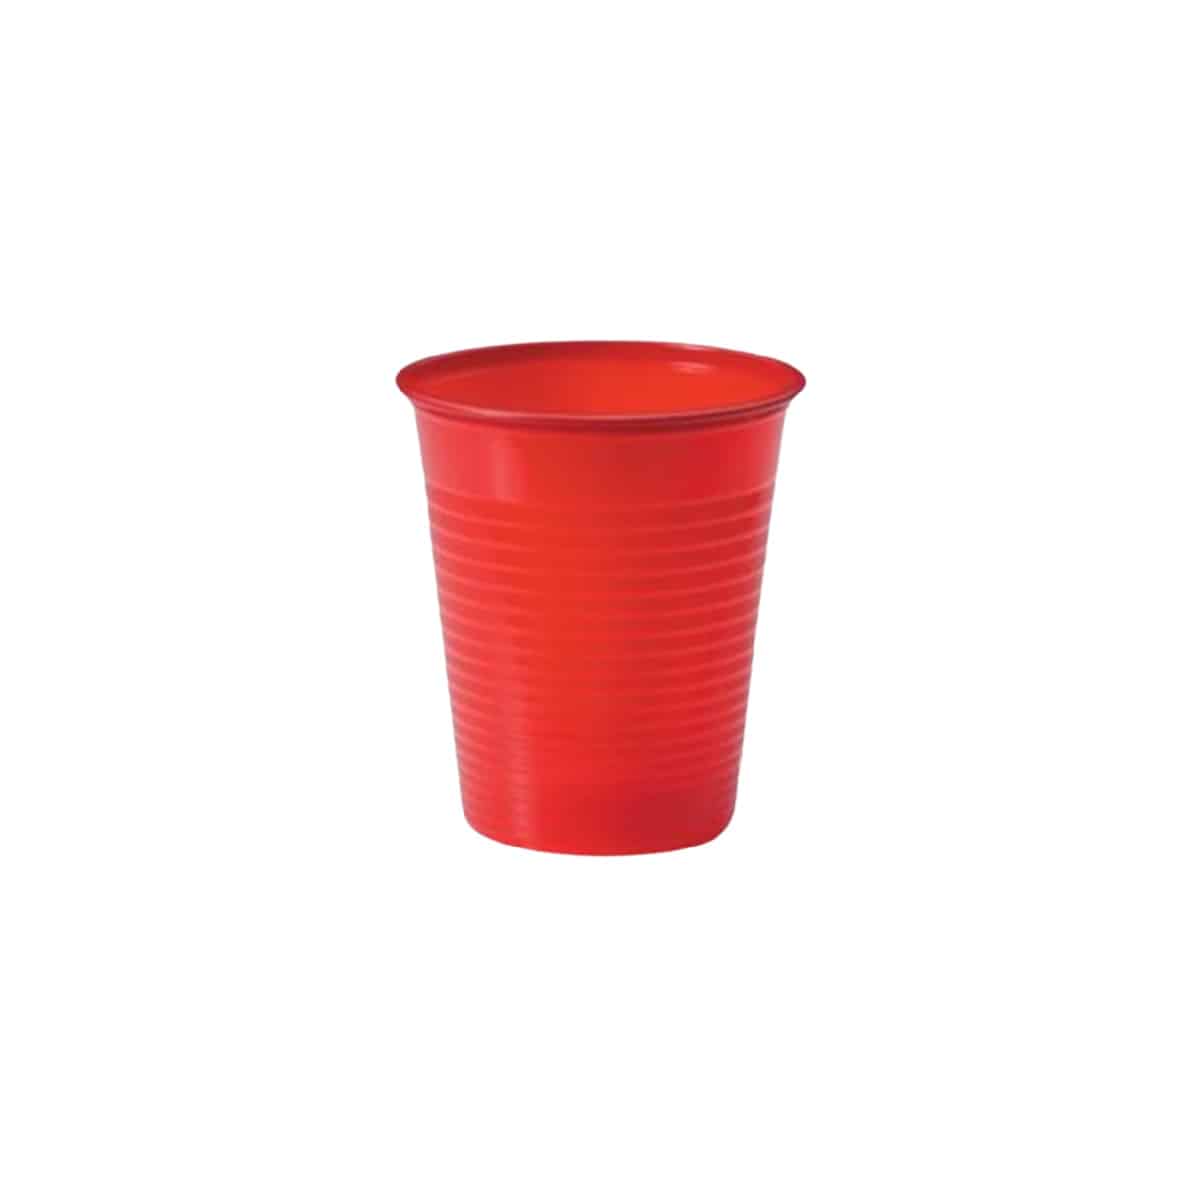 Bicchieri compostabili rossi 200 ml 100 pz